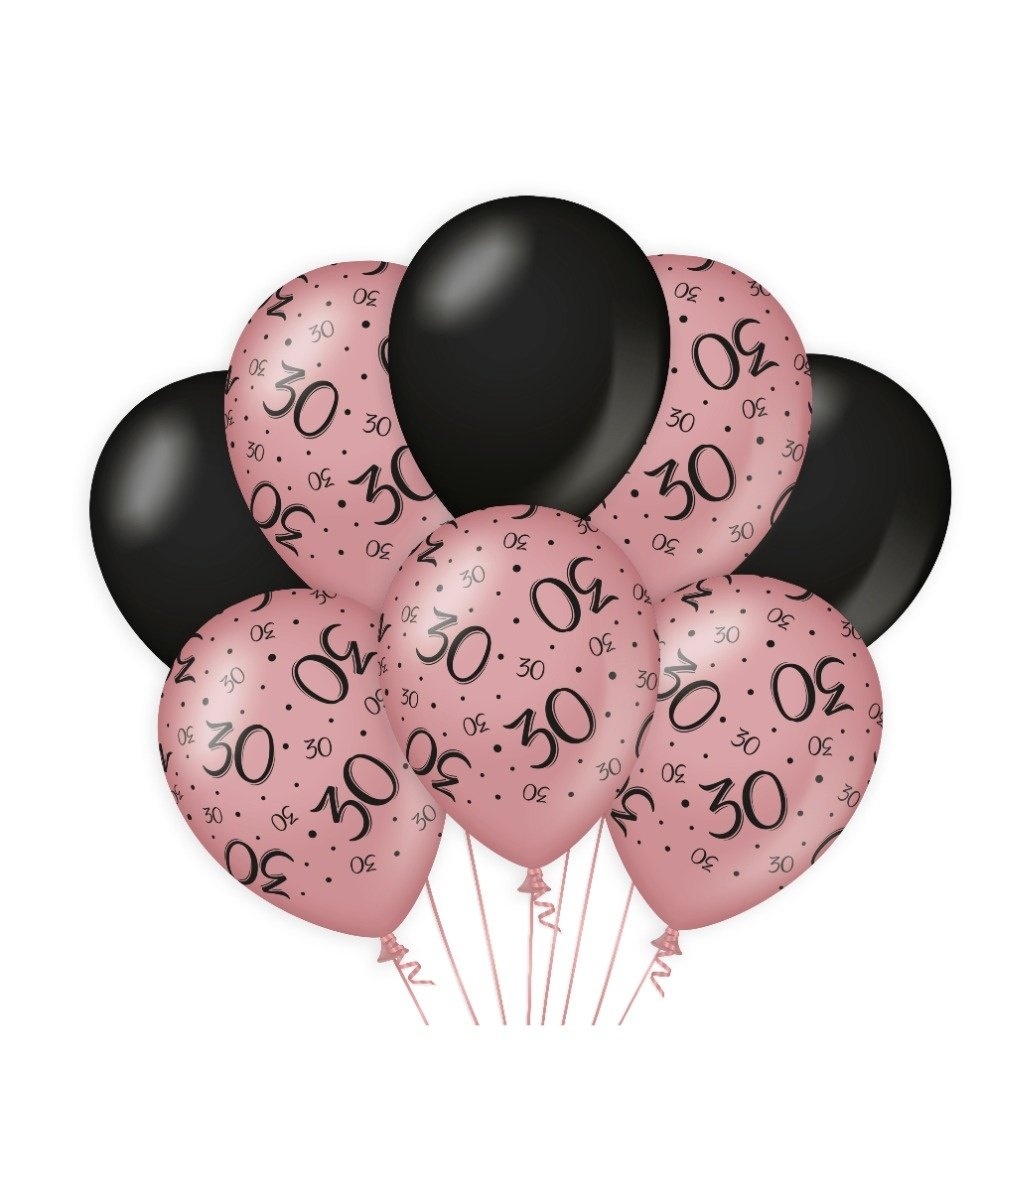 30x ballons noir et rose clair